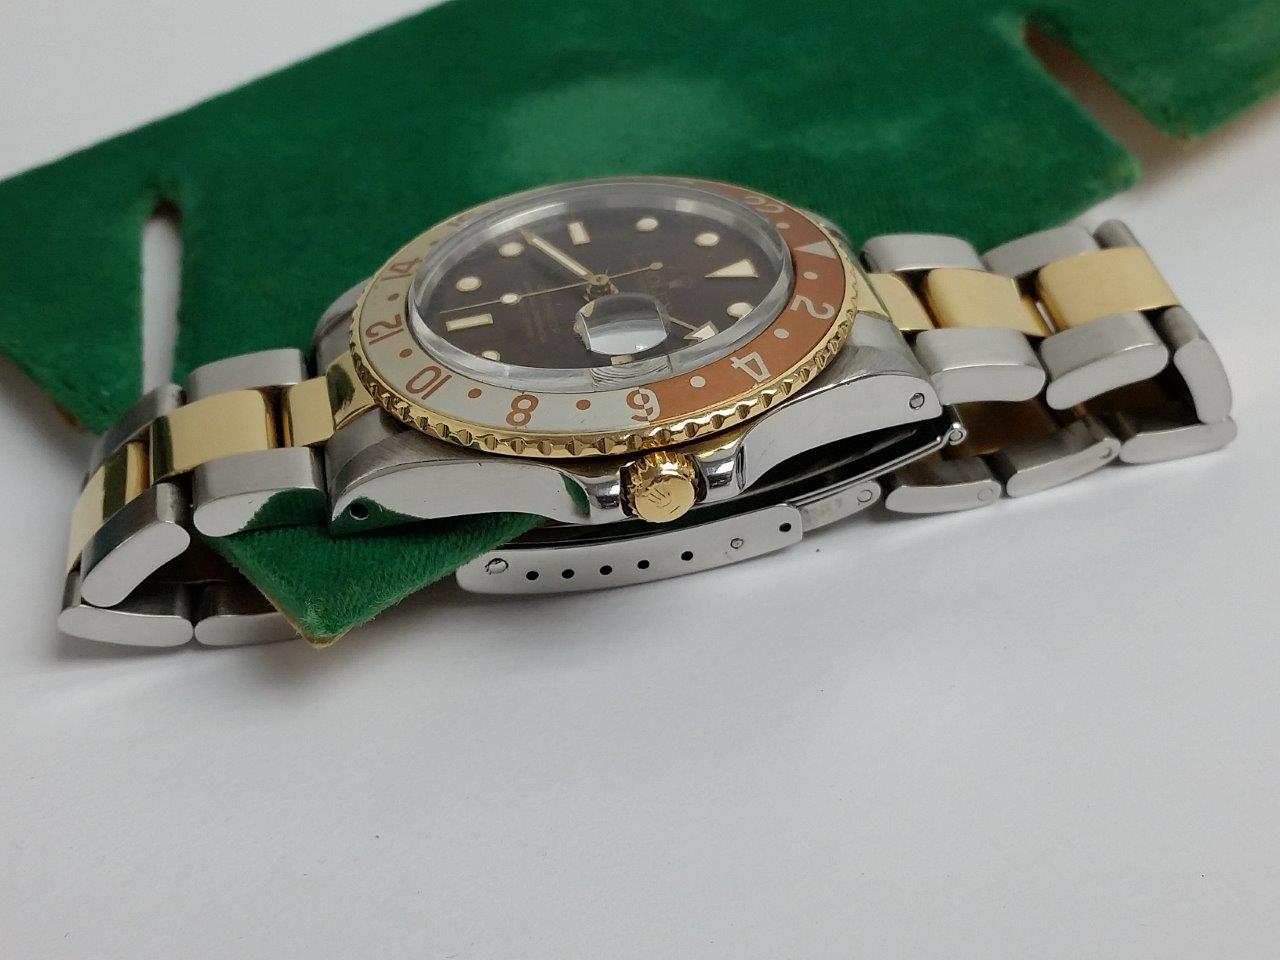 Vintage 16753 Rolex GMT-Master Quick-Set Date 18k Gold Steel Brown ROOTBEER